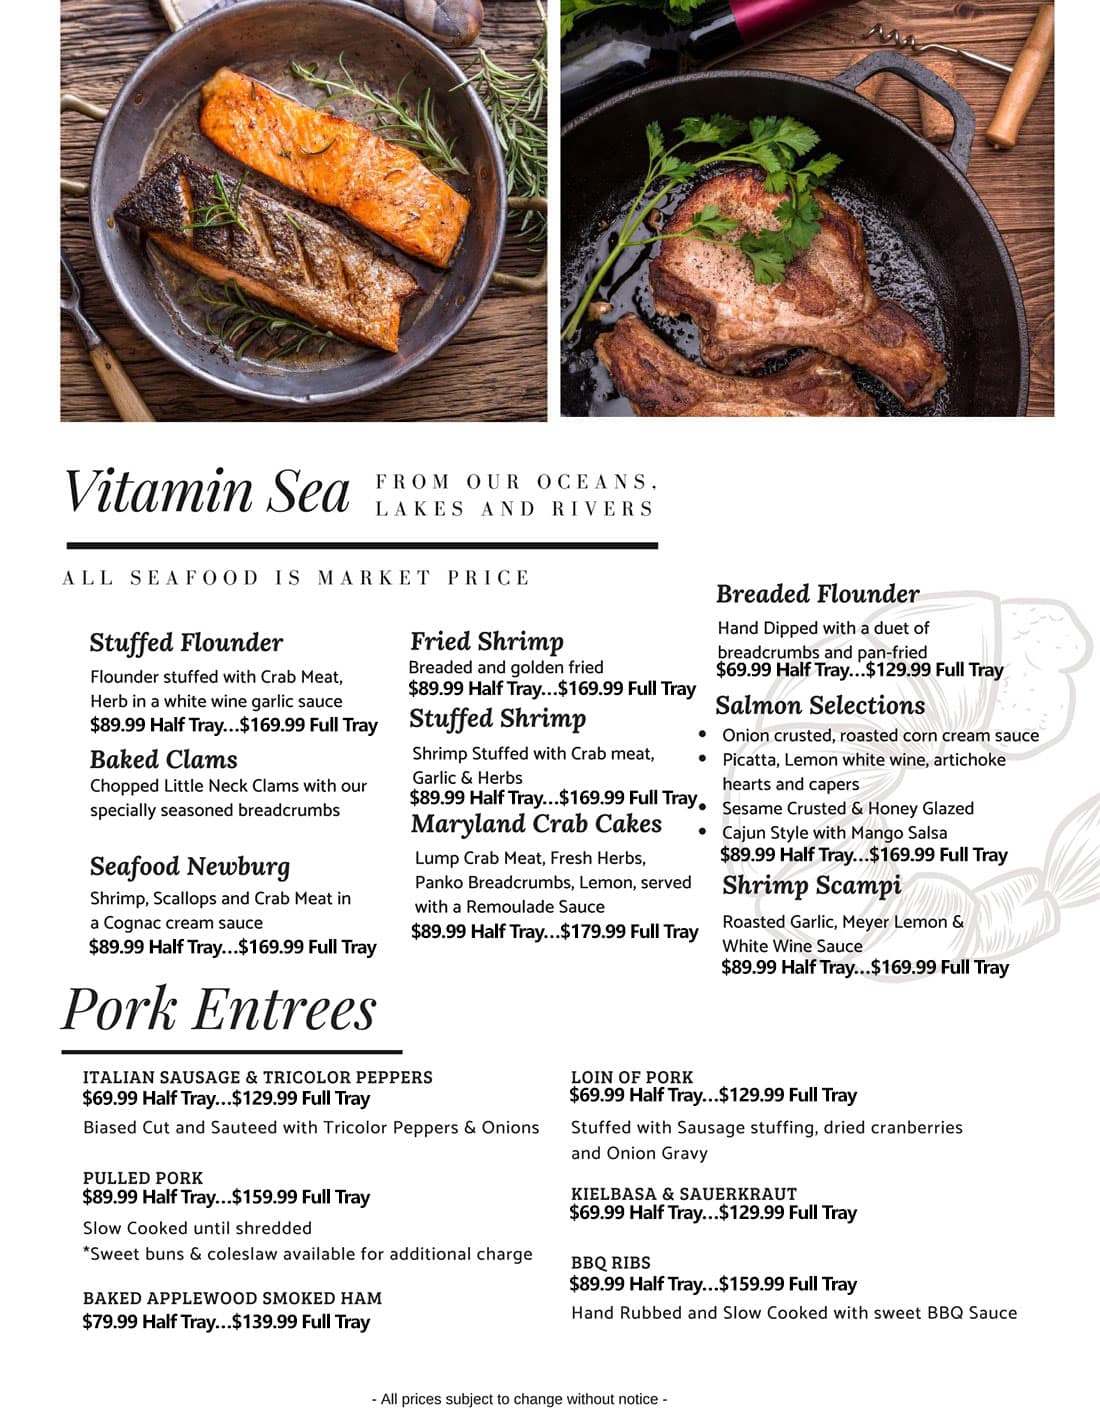 Catering Menu Vitamin Sea and Pork Entrees